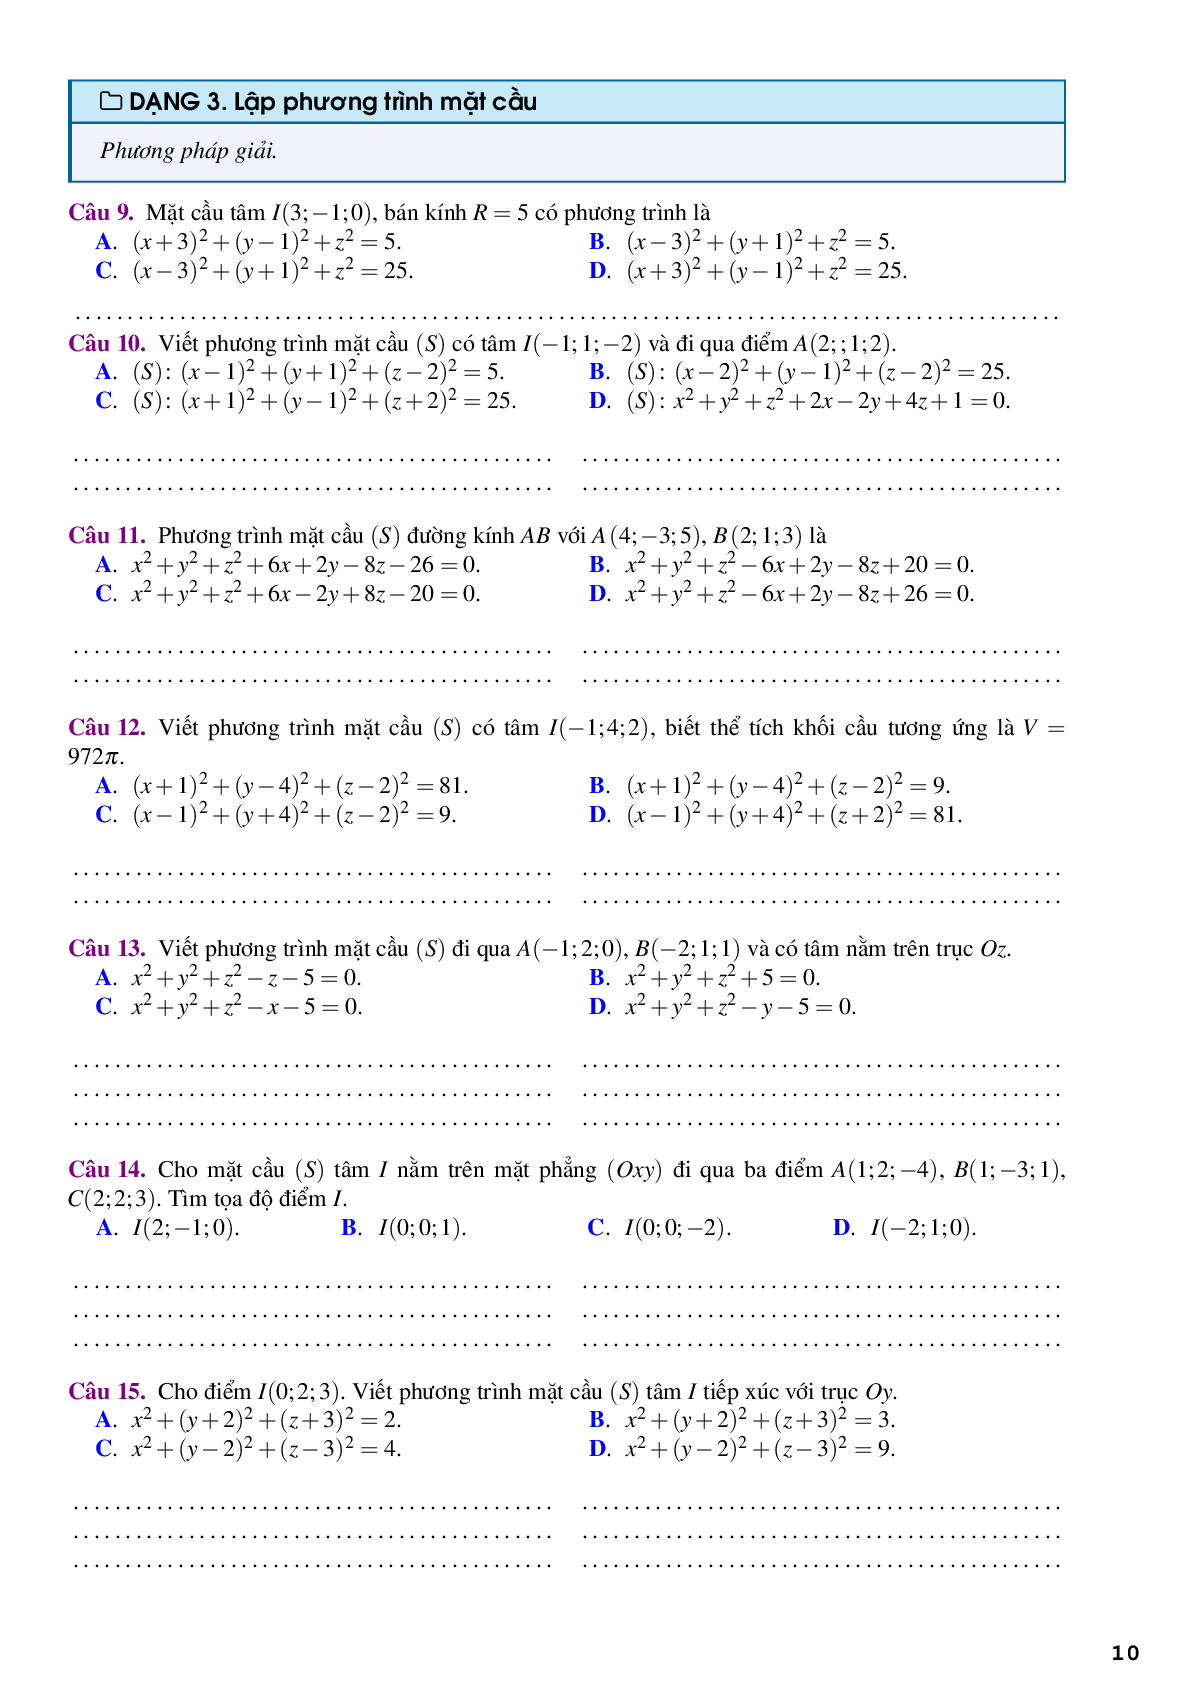 Bài tập trắc nghiệm về phương pháp tọa độ trong không gian (trang 10)